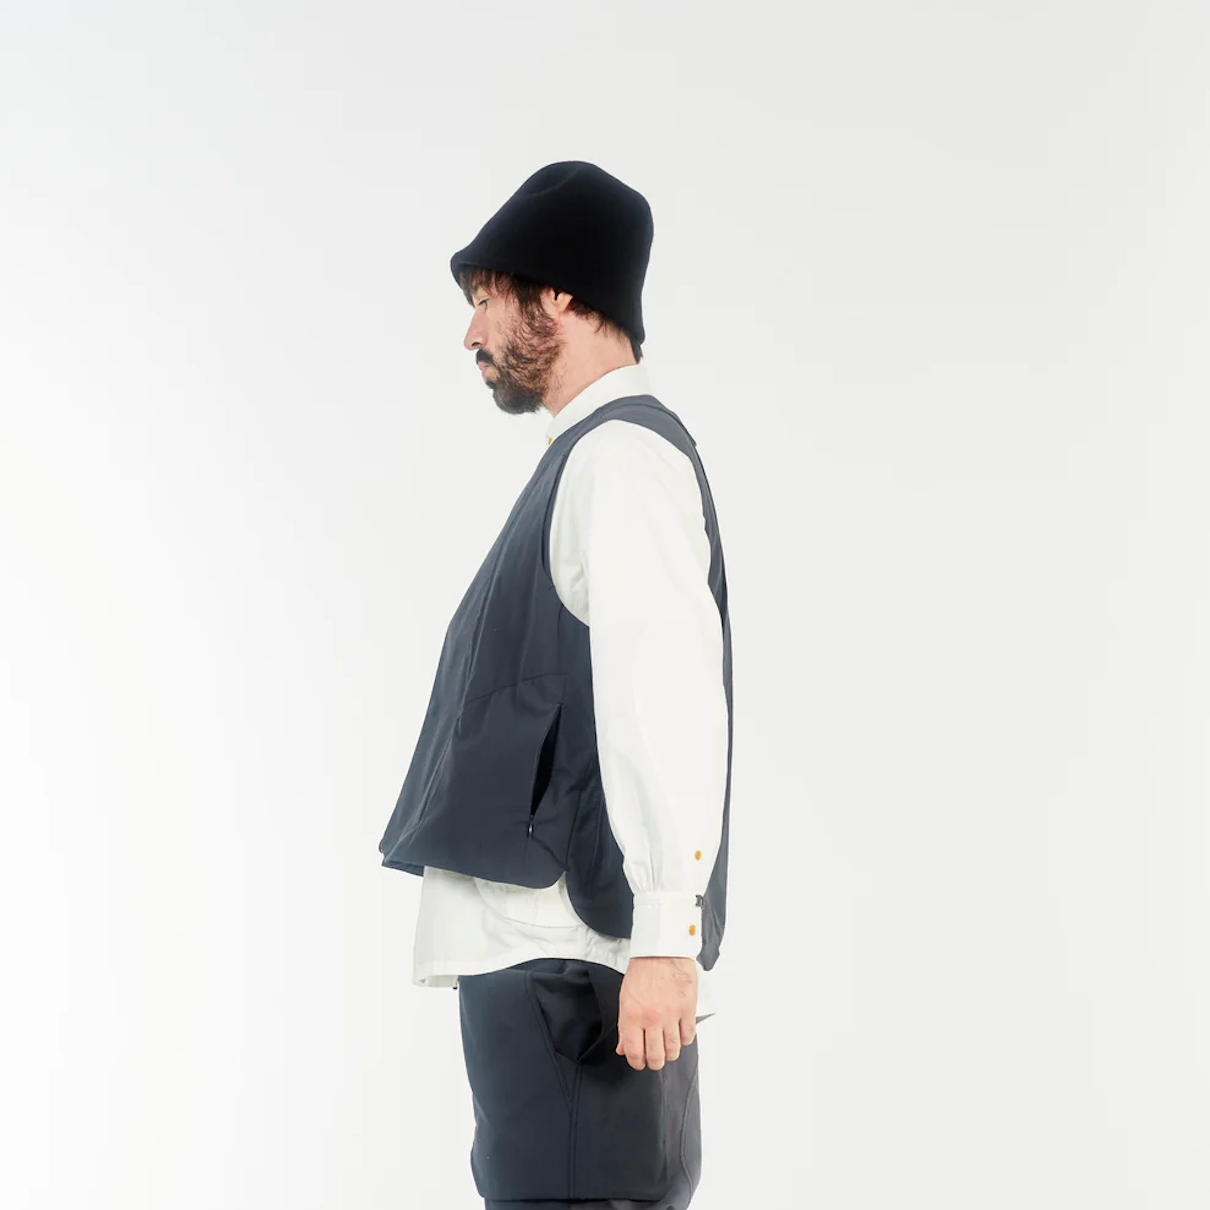 HNVT-022 Flame retardant "TAKIBI" Vest